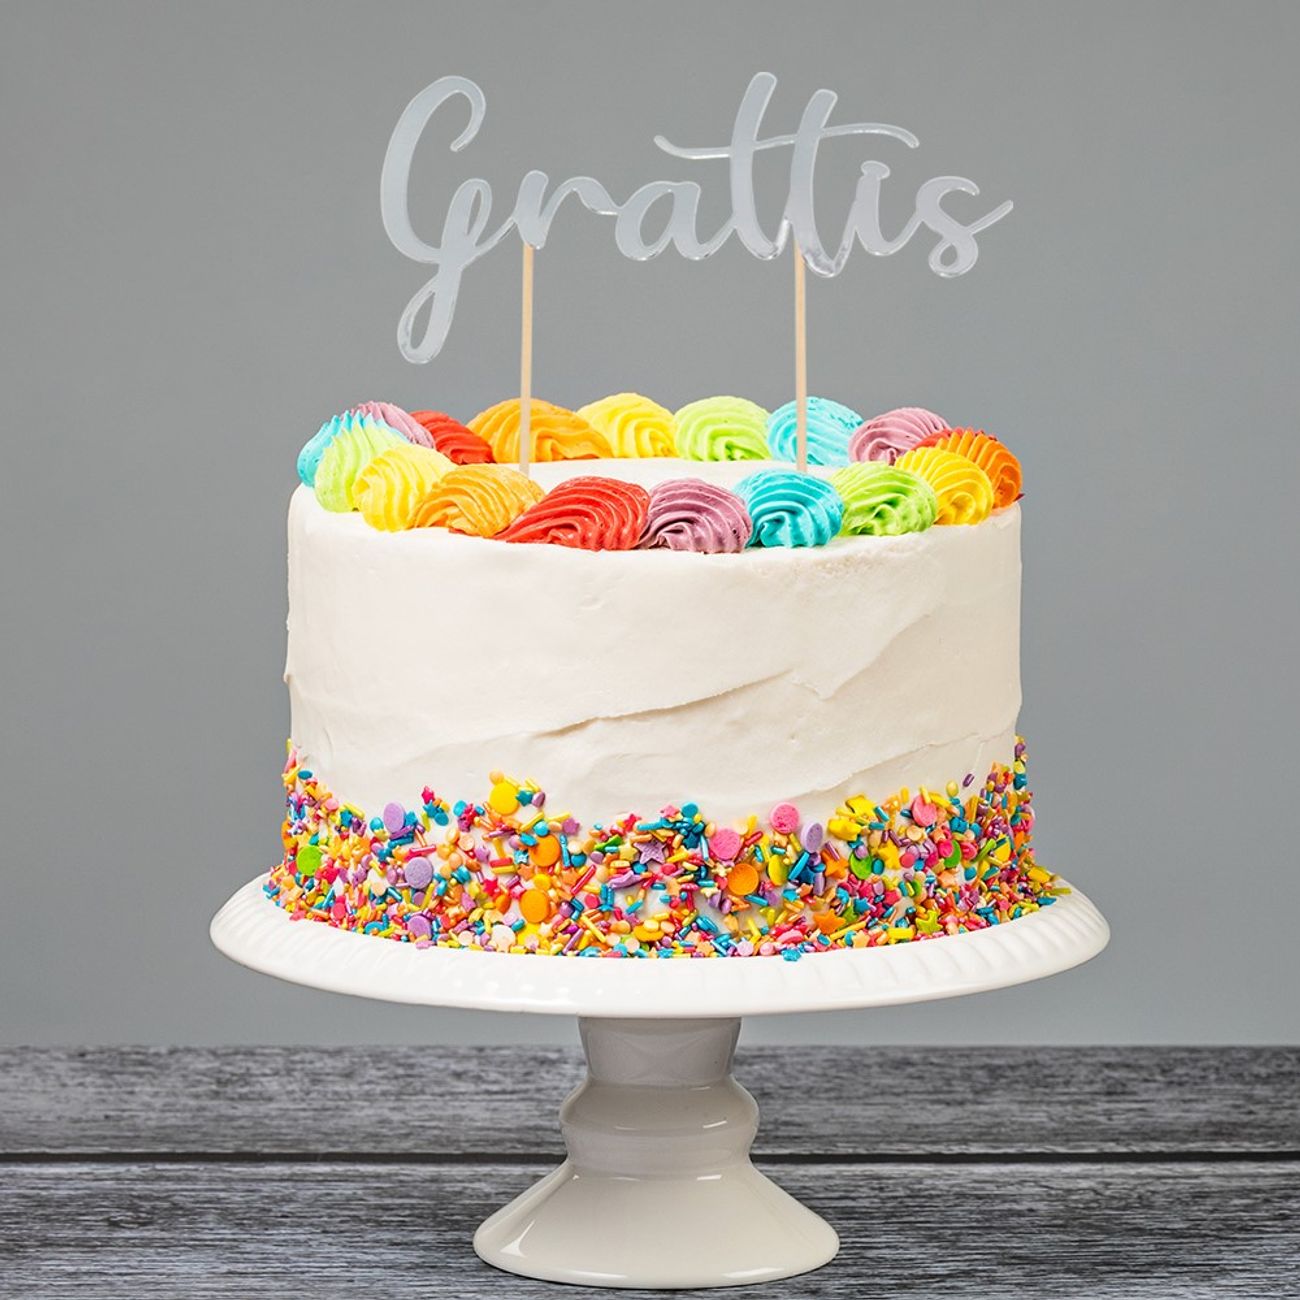 cake-topper-grattis-silver-79163-1